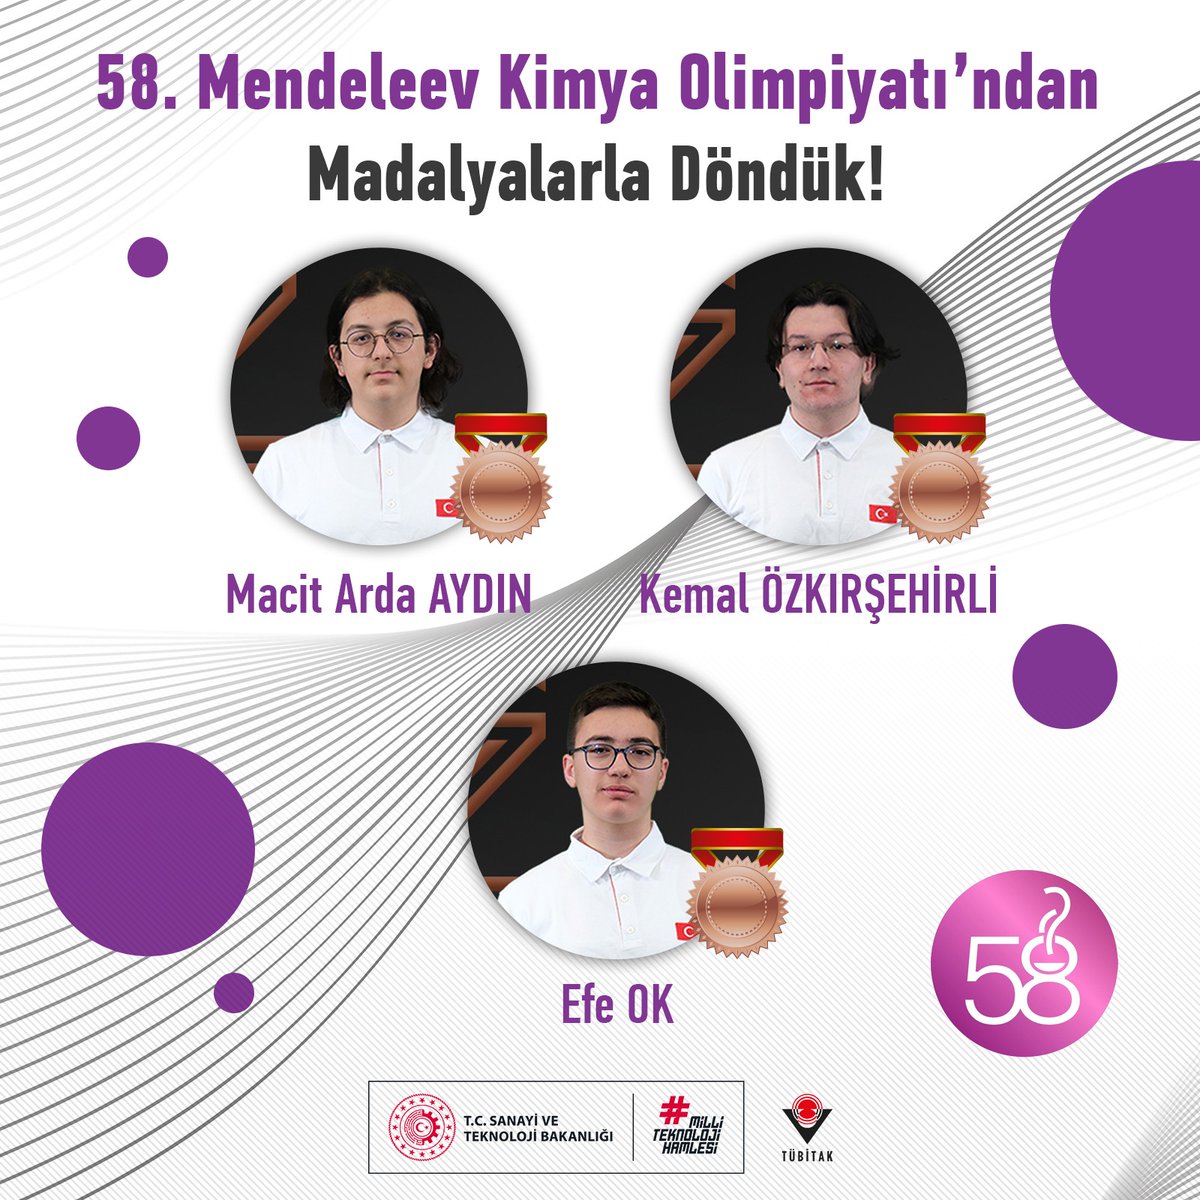 58. Mendeleev Kimya Olimpiyatı’ndan madalyalarla döndük! 🏅

Çin’in Shenzhen şehrinde düzenlenen, 3⃣0⃣ ülkeden 1⃣5⃣1⃣ öğrencinin katıldığı 58. Mendeleev Kimya Olimpiyatı’nda öğrencilerimiz;

🥉🥉🥉 üç Bronz madalya kazanarak Ülkemizi gururlandırdılar! 🇹🇷

Geleceğin bilim insanı…